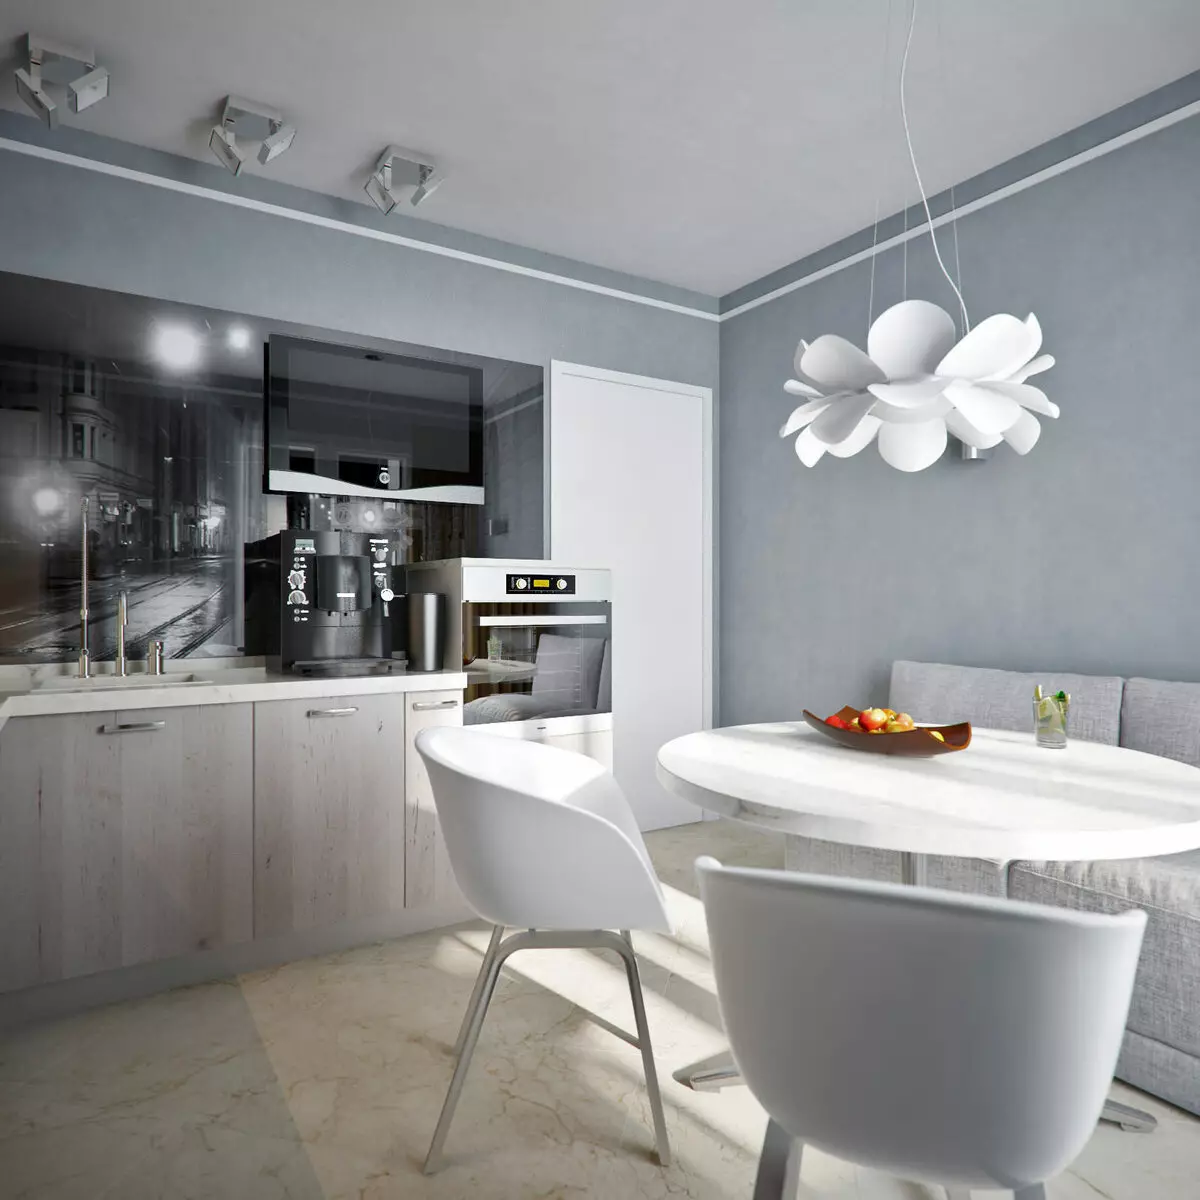 Nhà bếp màu trắng xám (81 ảnh): Tai nghe nhà bếp bằng tông màu trắng và xám trong nội thất. Thiết kế các bức tường trắng với mũ màu xám hoặc vỏ bóng 9389_72